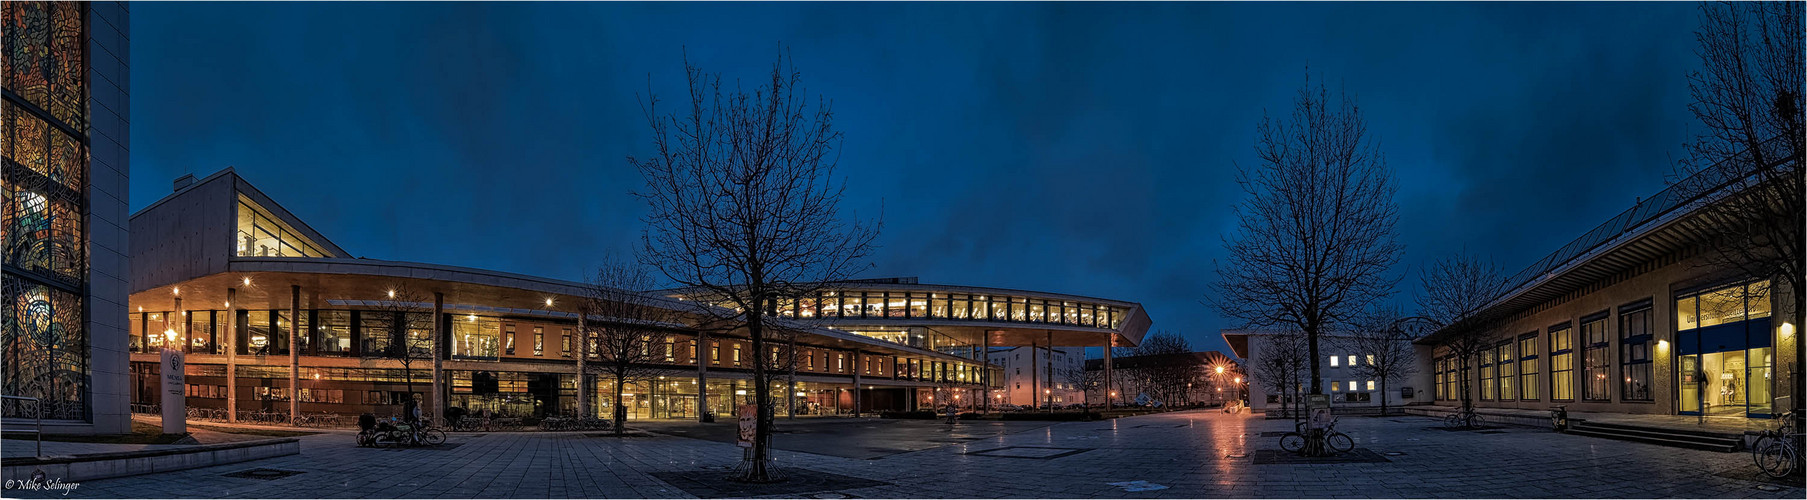 Uni Bibliothek Magdeburg